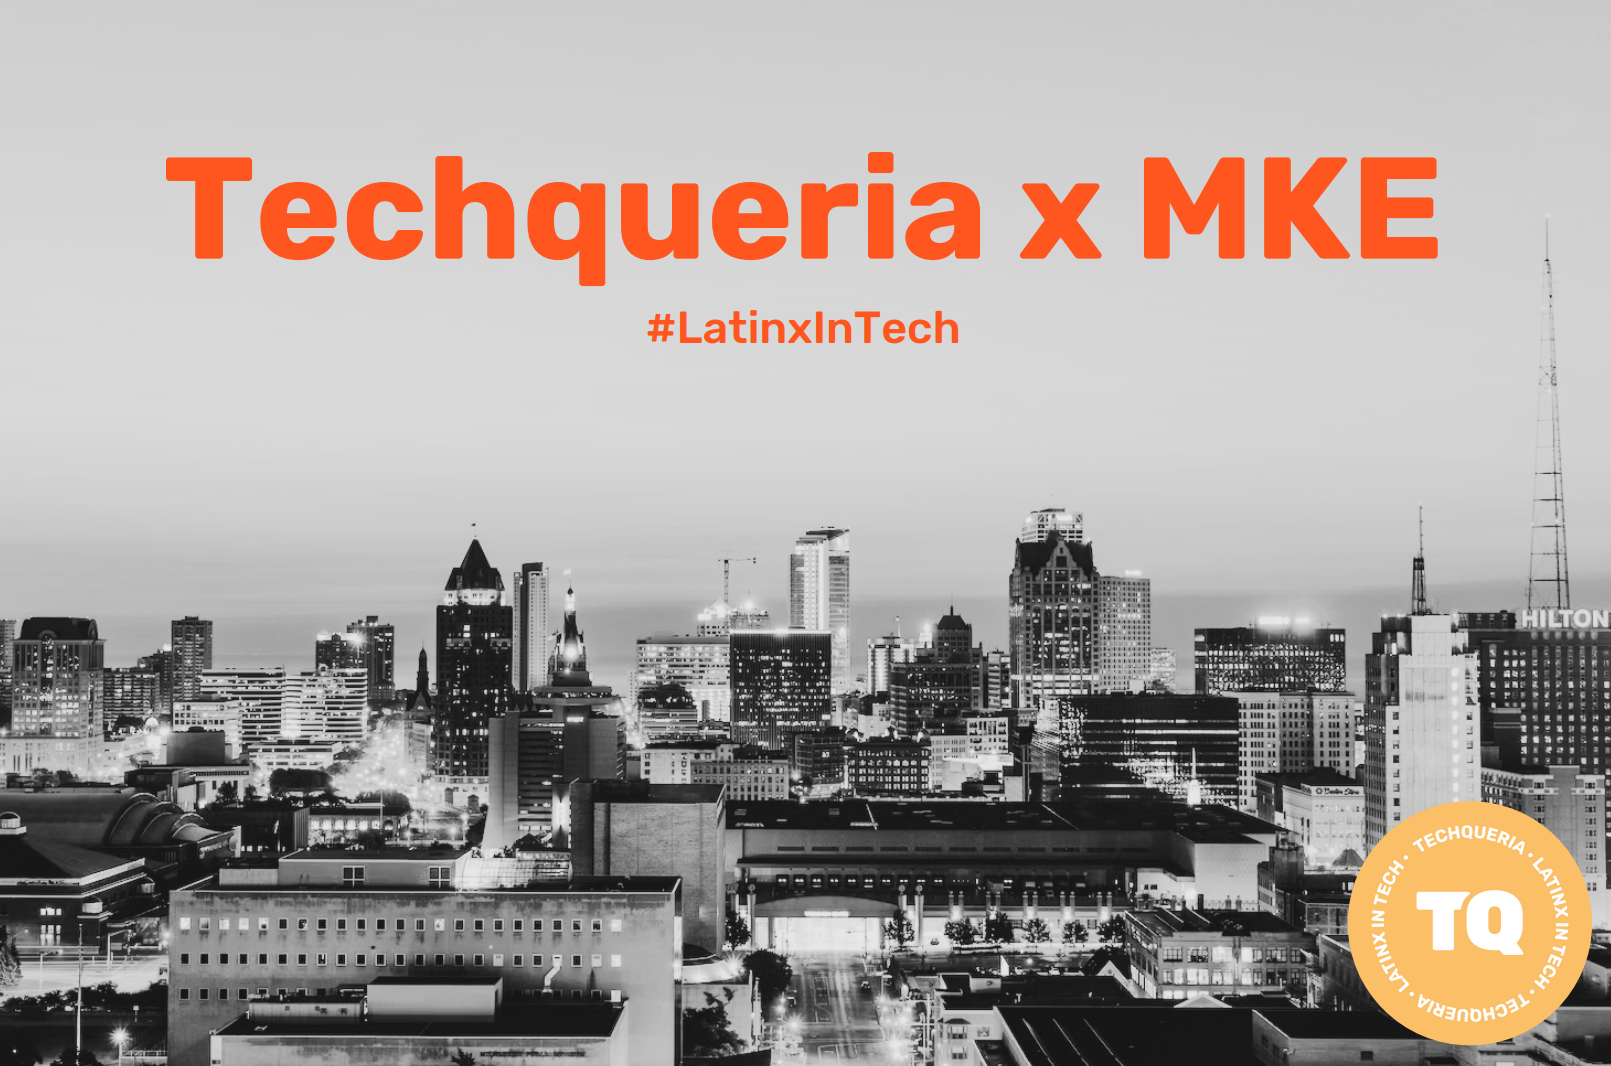 Techqueria x MKE. #LatinxInTech